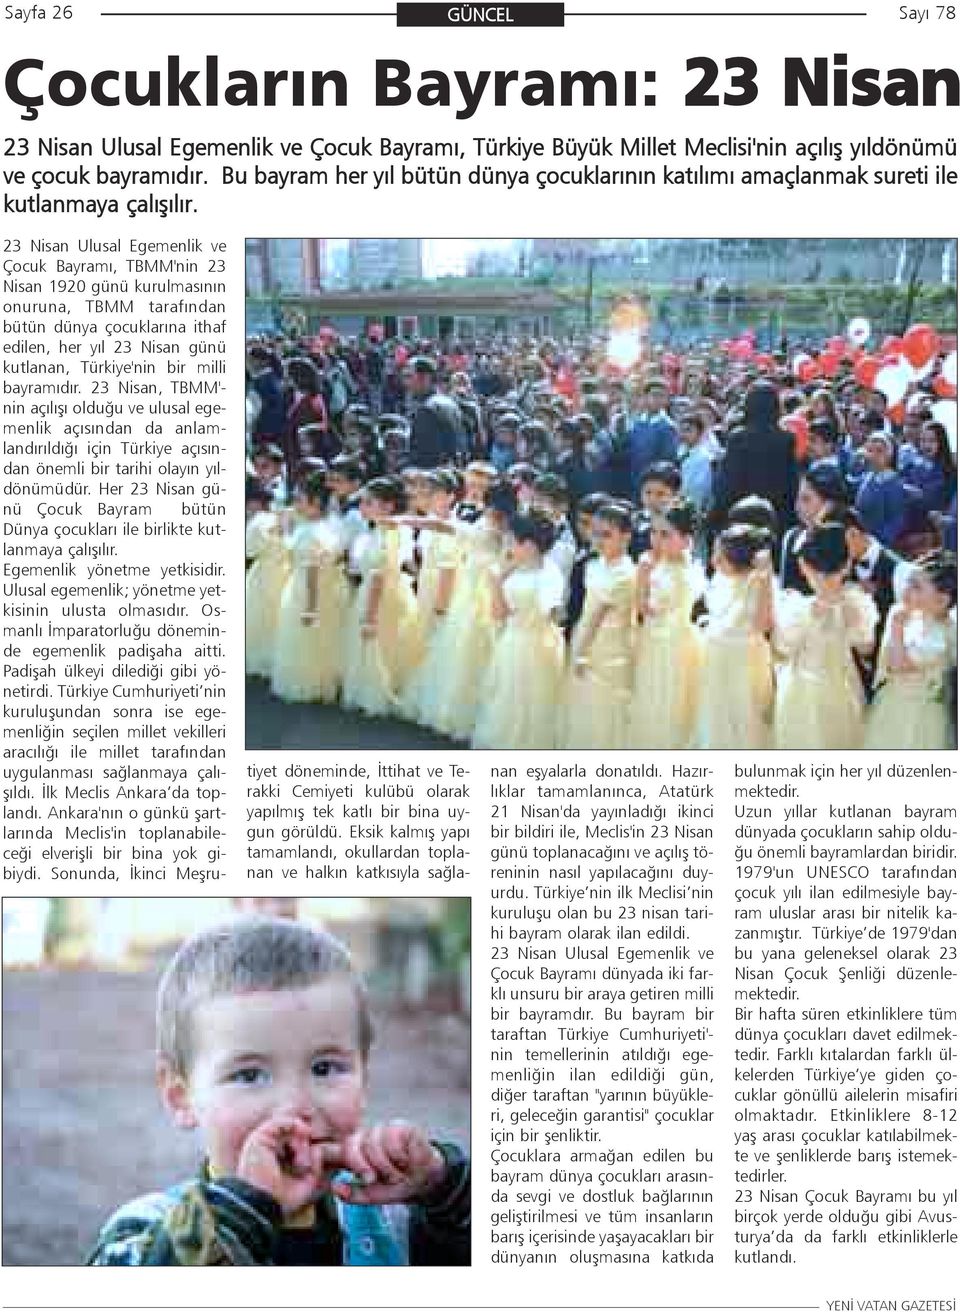 23 Nisan Ulusal Egemenlik ve Çocuk Bayramý, TBMM'nin 23 Nisan 1920 günü kurulmasýnýn onuruna, TBMM tarafýndan bütün dünya çocuklarýna ithaf edilen, her yýl 23 Nisan günü kutlanan, Türkiye'nin bir